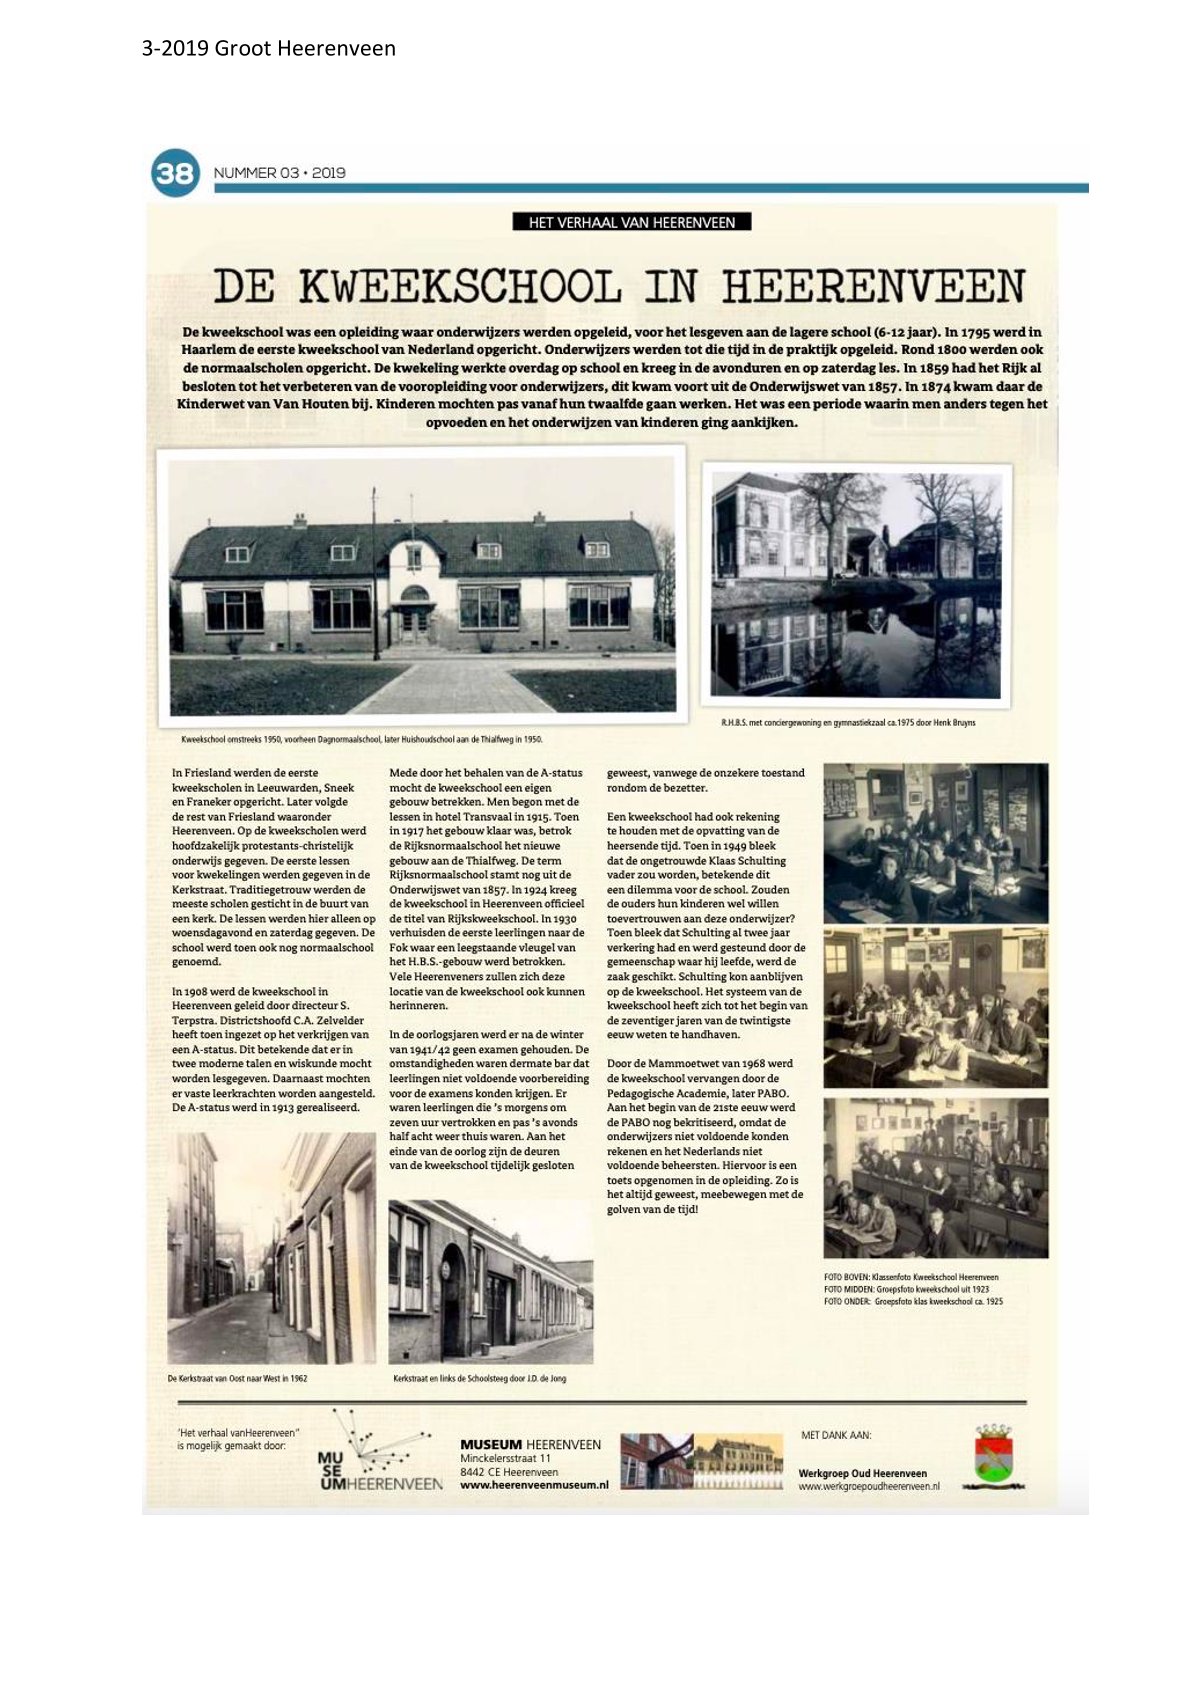 De kweekschool in Heerenveen